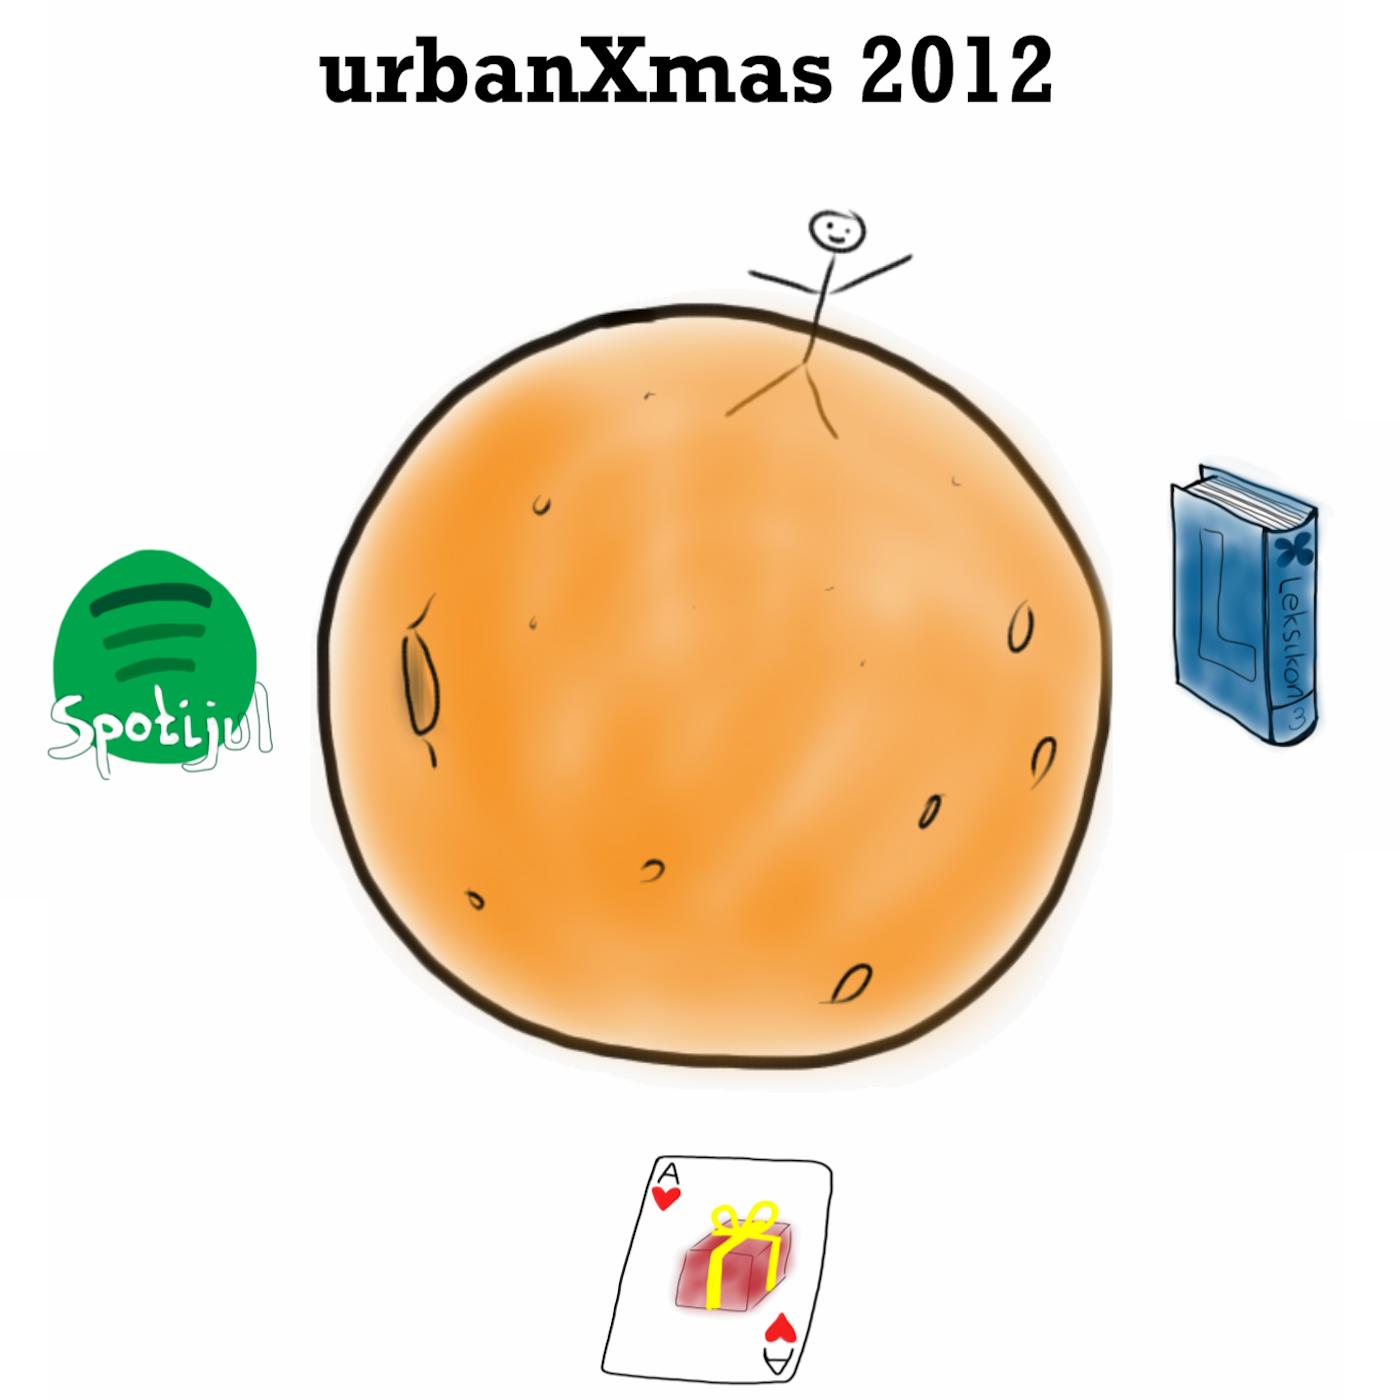 urbanXmas 2012